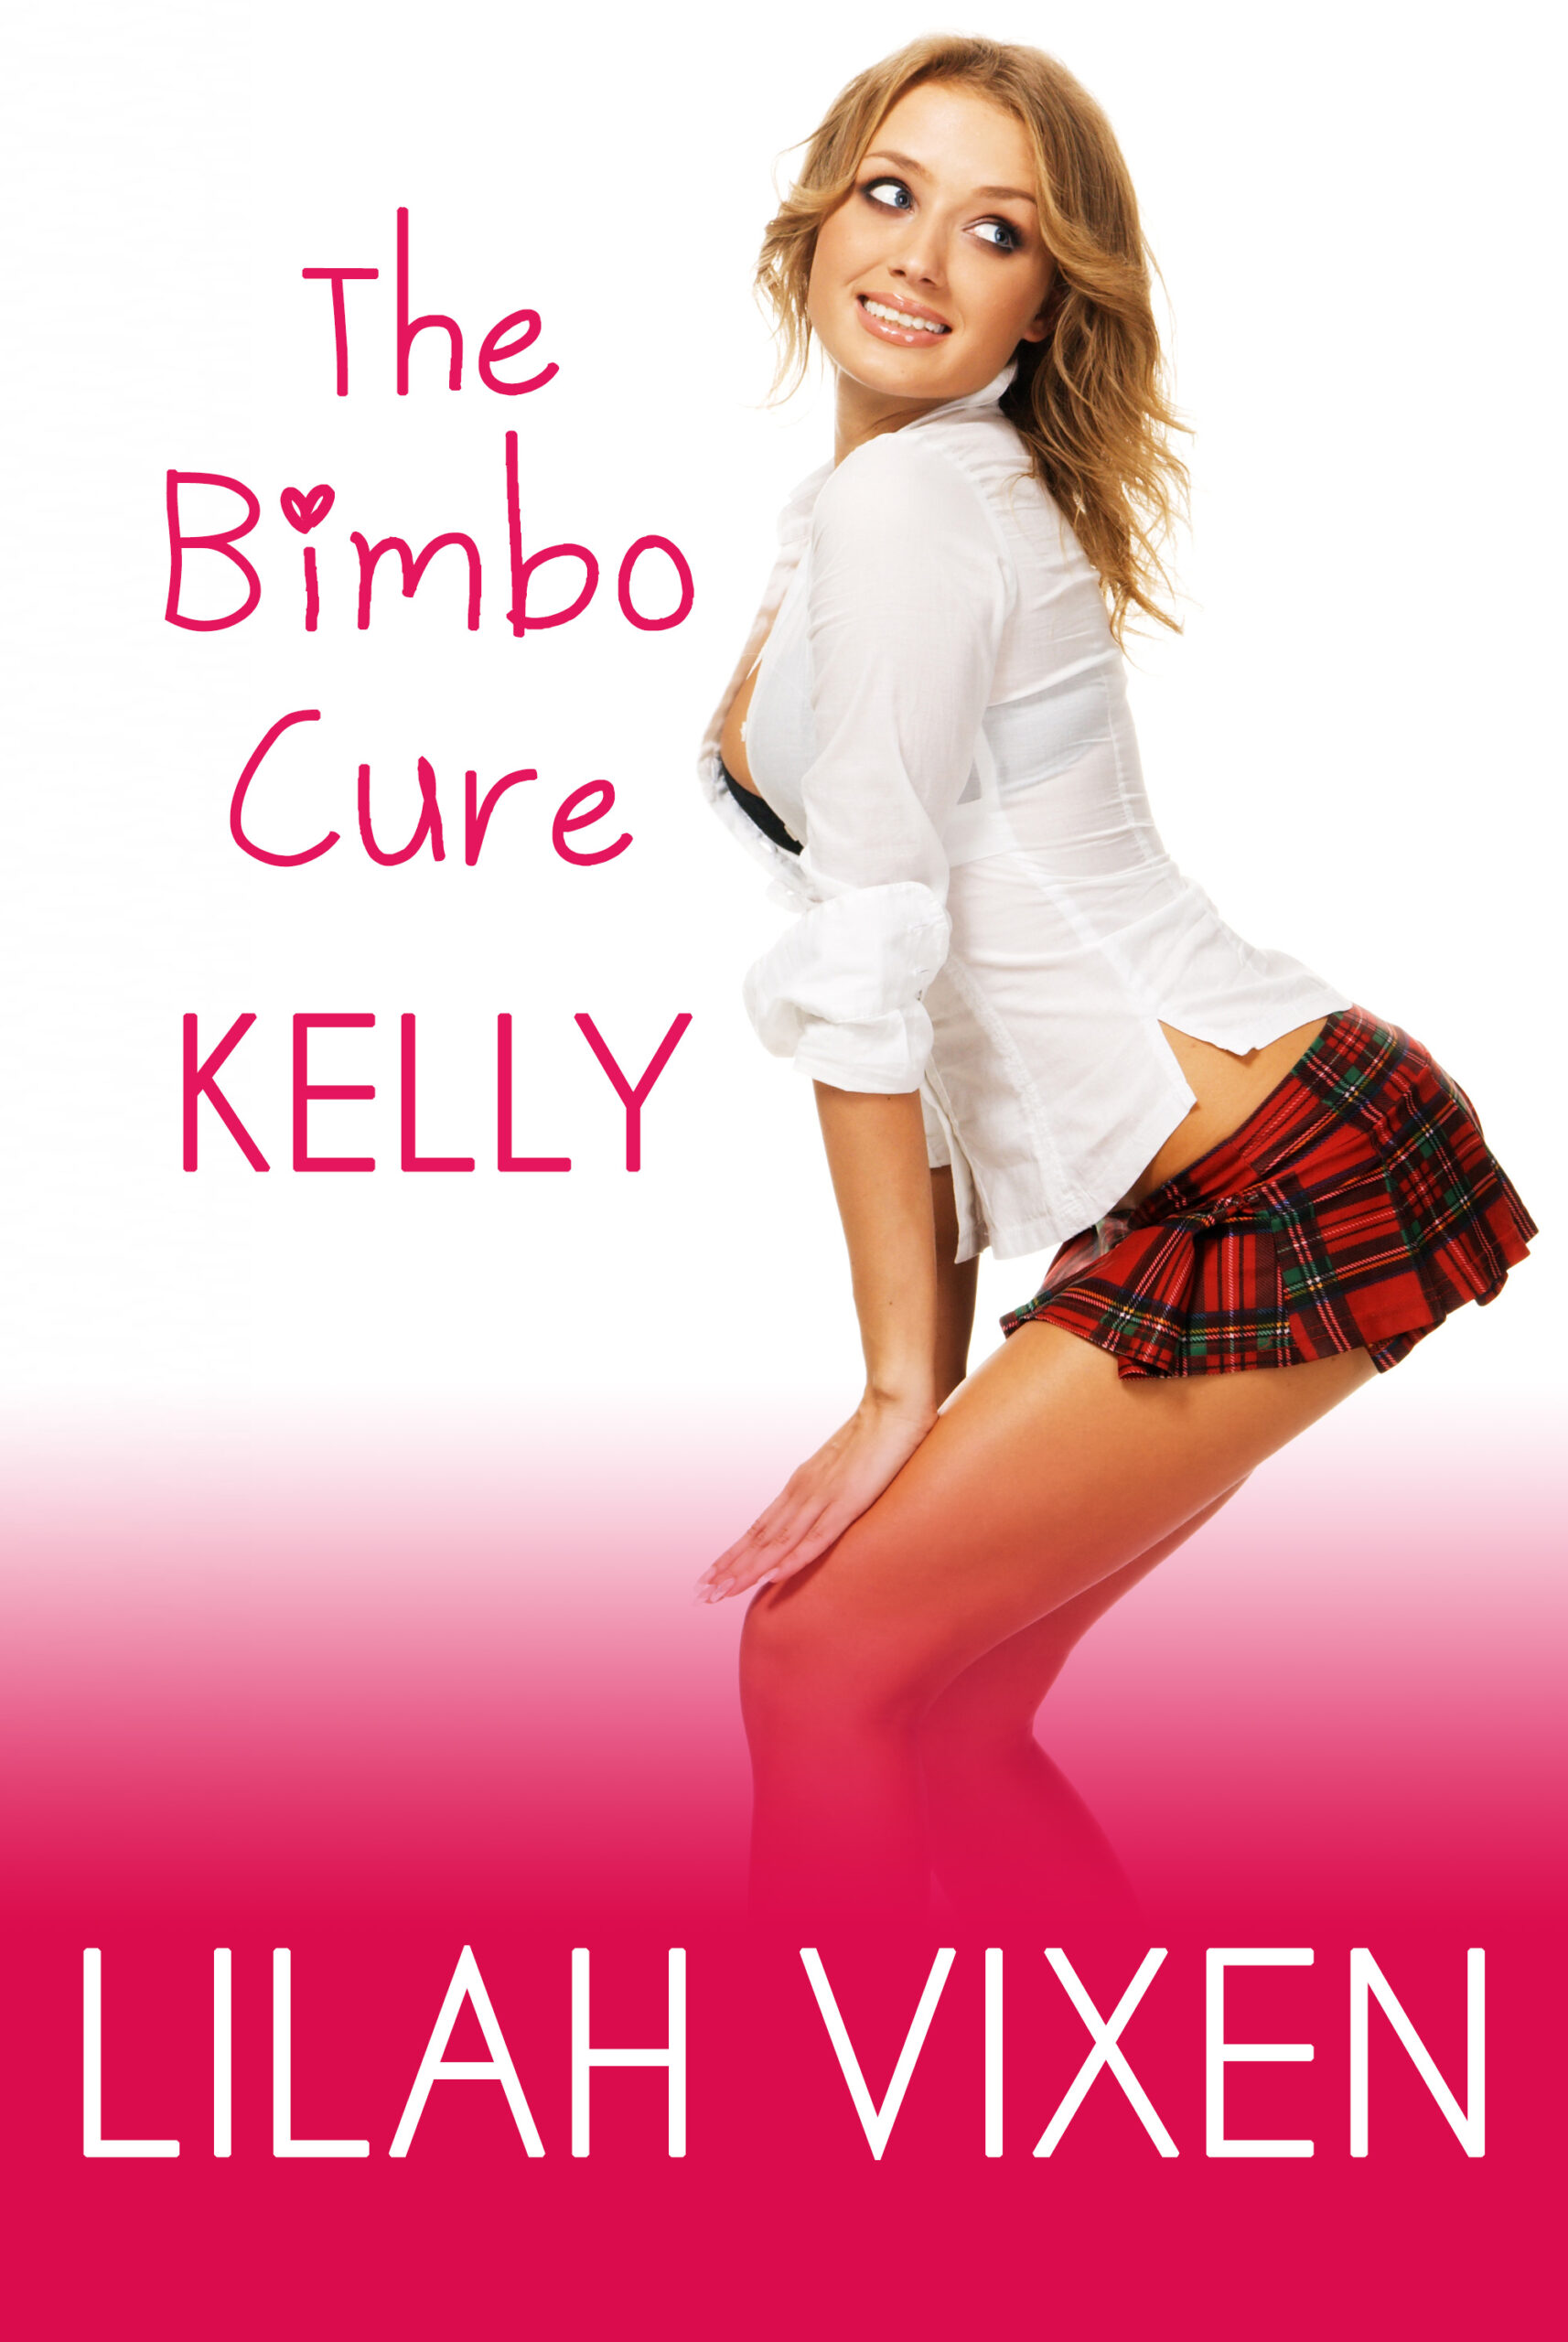 The Bimbo Cure: Kelly